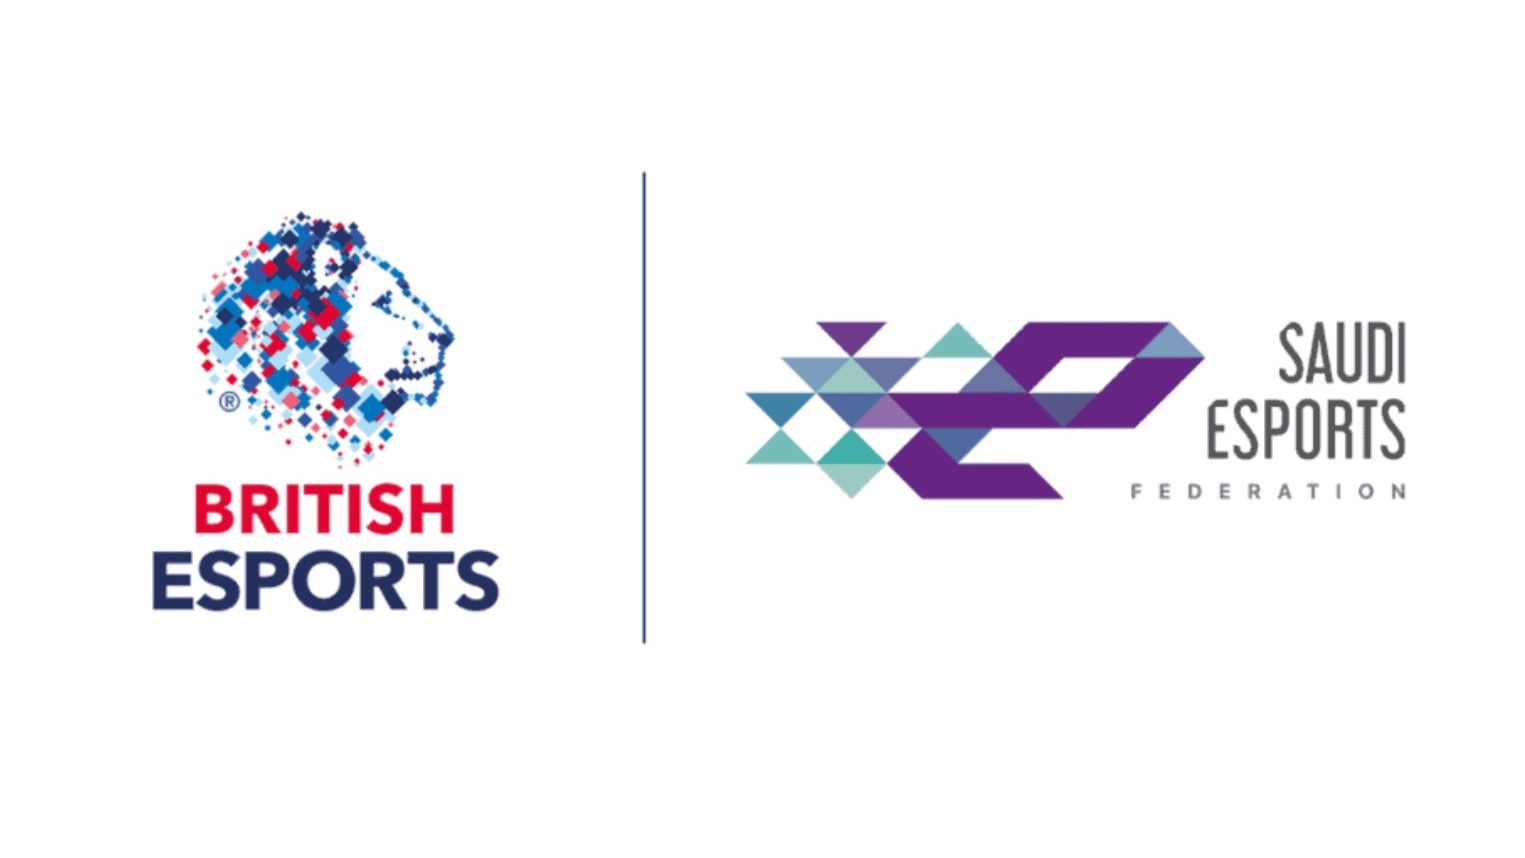 İngiliz Esports, Suudi Esports ortaklığıyla ilgili tartışmaların ardından 